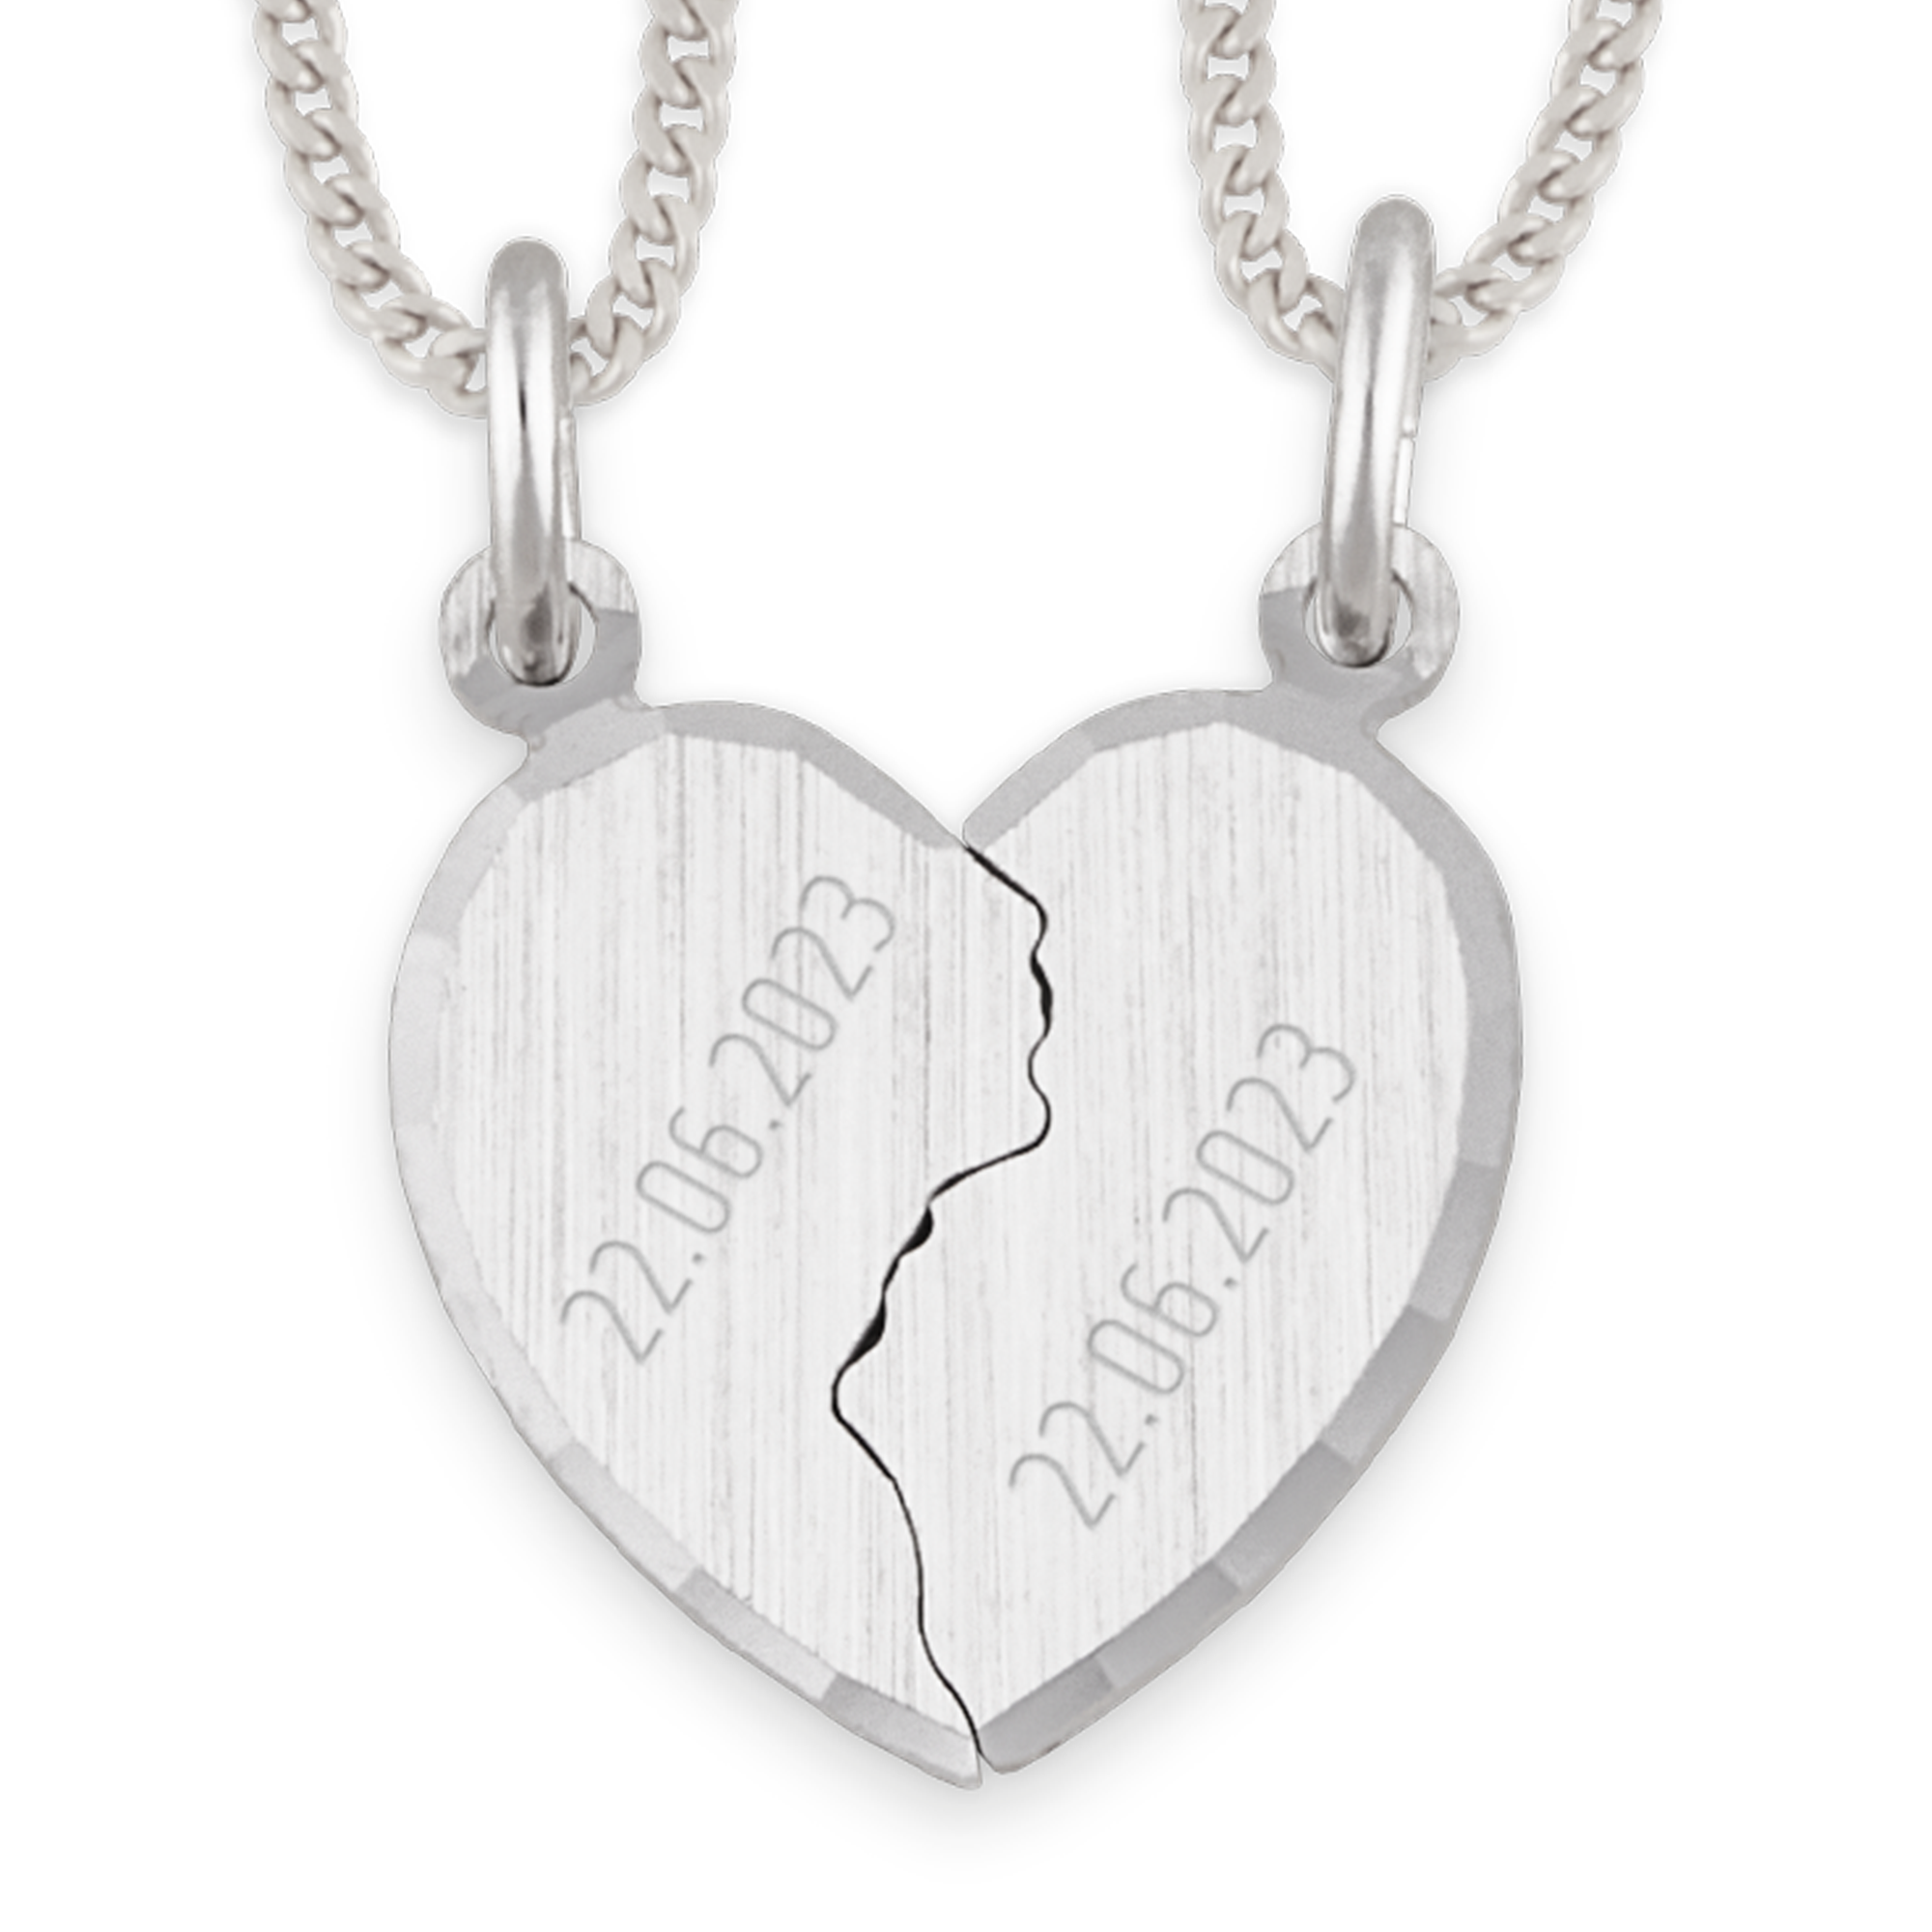 Silver pendant - Broken hearts - Name